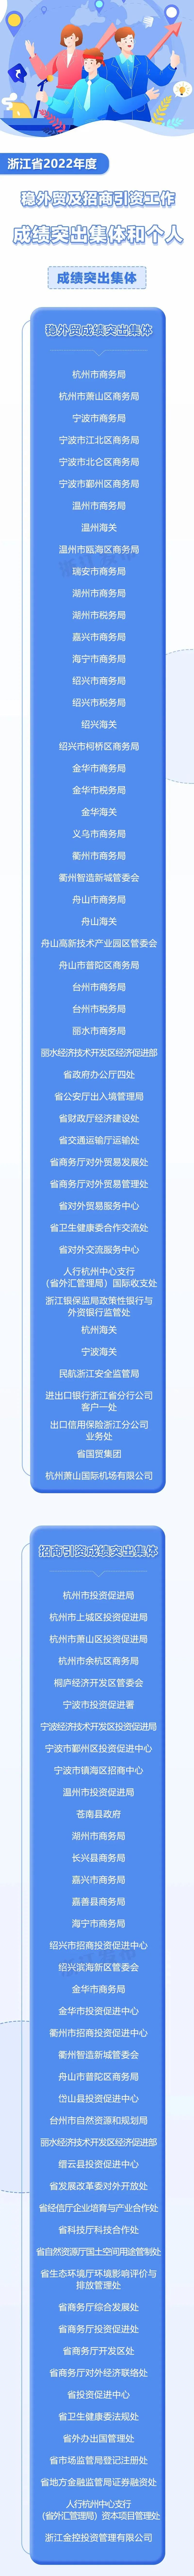 杨利琴等180名个人 浙江省政府办公厅通报表扬